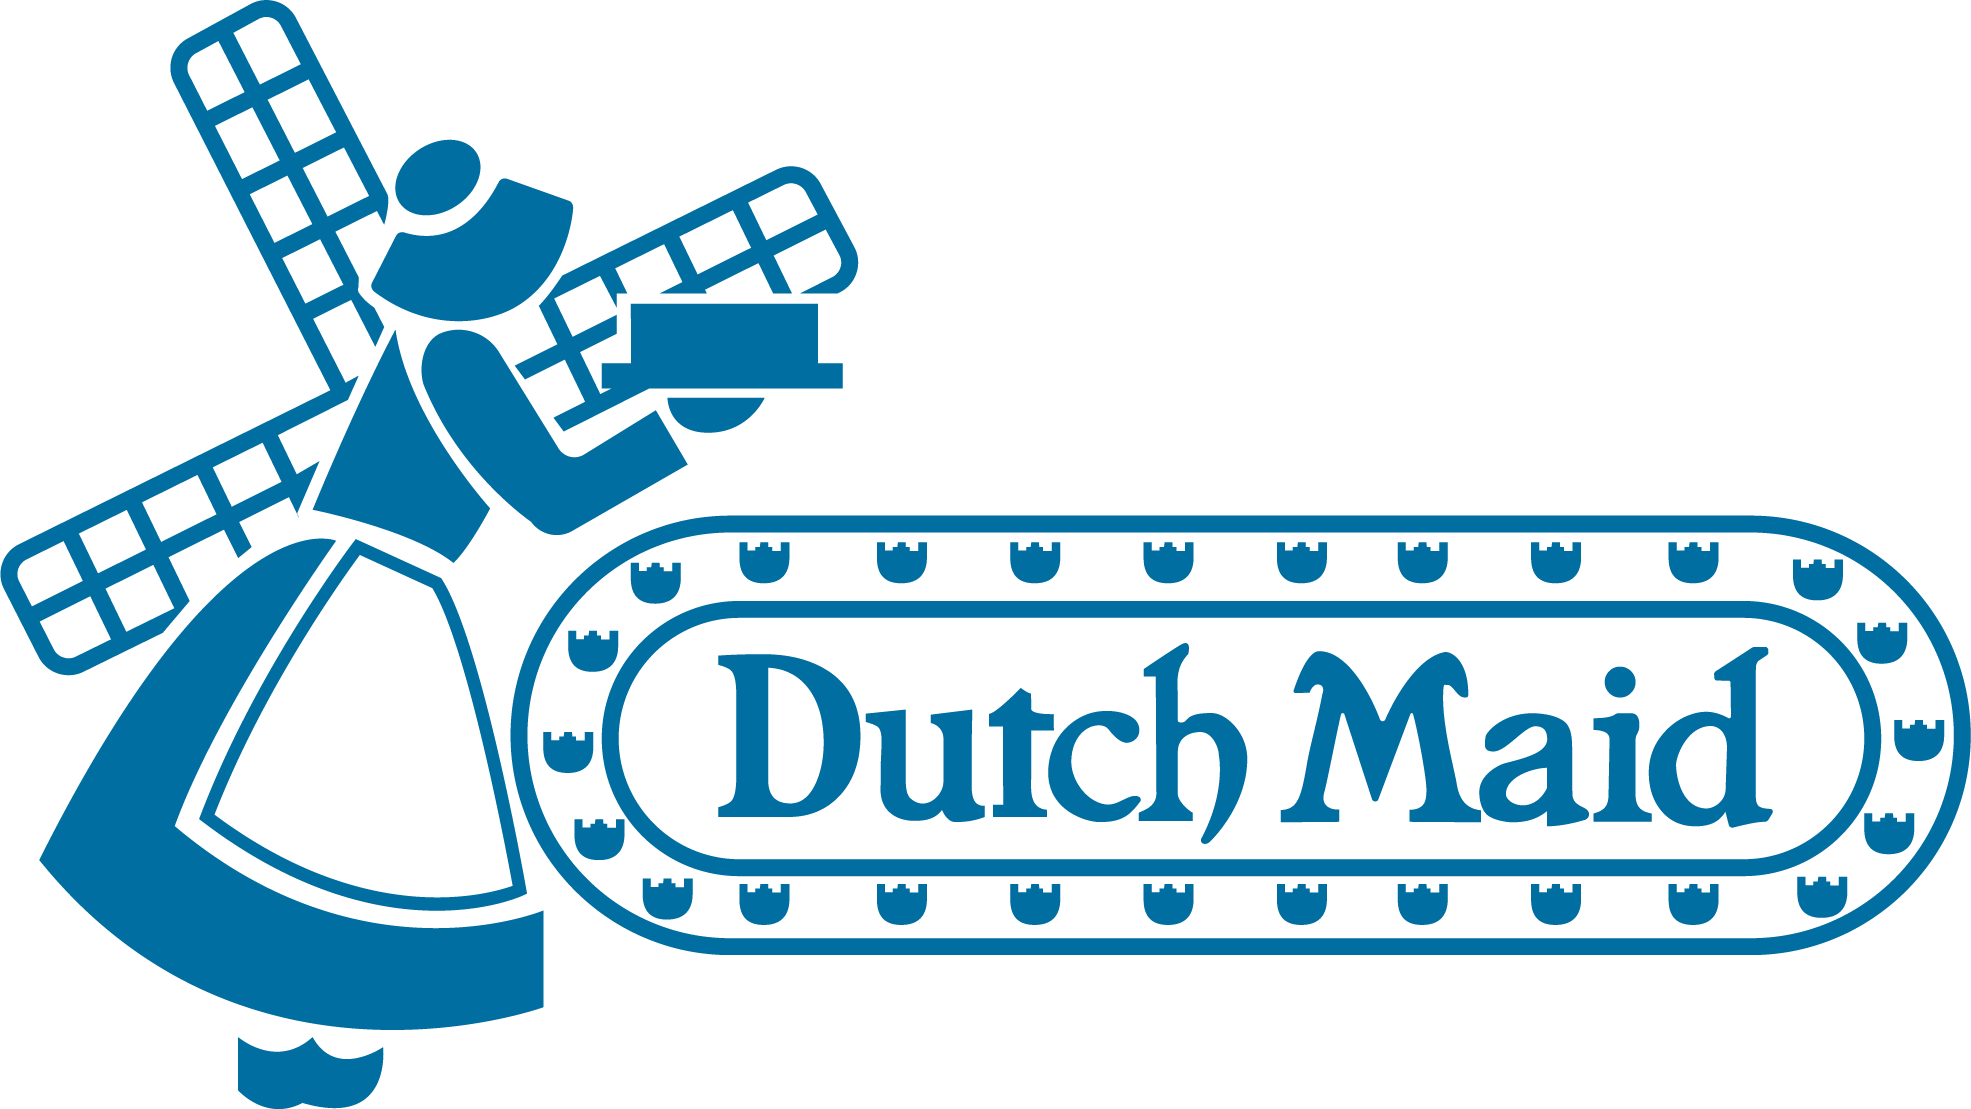 Dutch Maid logo